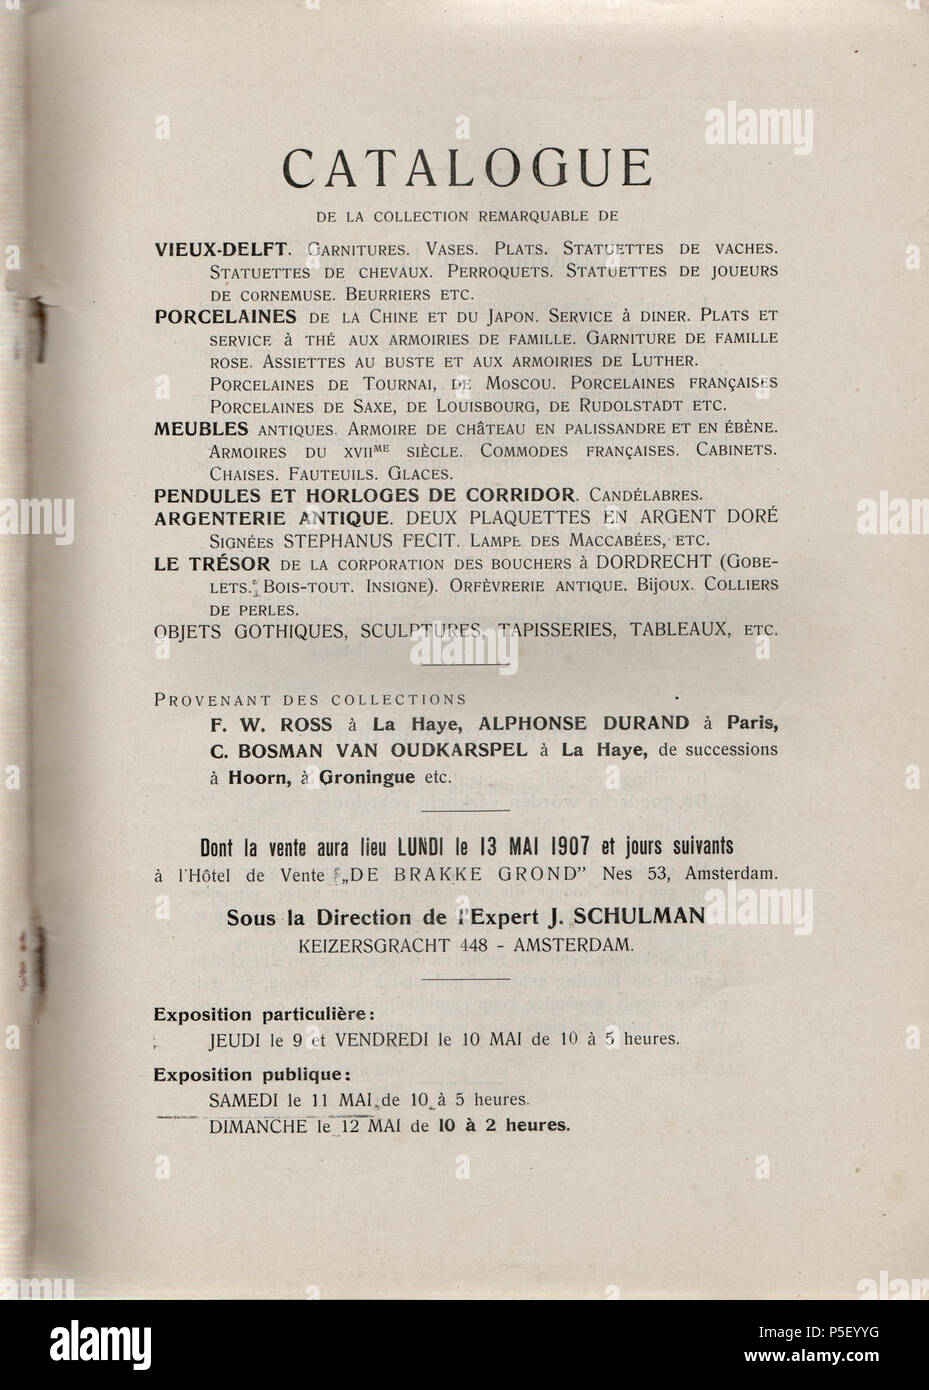 N/A. English: J. Schulman (1907) Collections. F.W. Ross, La Haye. A. Durand, Paris. Successions de Hoorn, de Groningue. Le trésor de la corporation des bouchers à Dordrecht (provenant de M.C. BOSMAN van Oudkarspel), Amsterdam: [s.n.], p. i. 1907. J. Schulman 366 Collections F.W. Ross, La Haye, A. Durand, Paris et al., p i Stock Photo